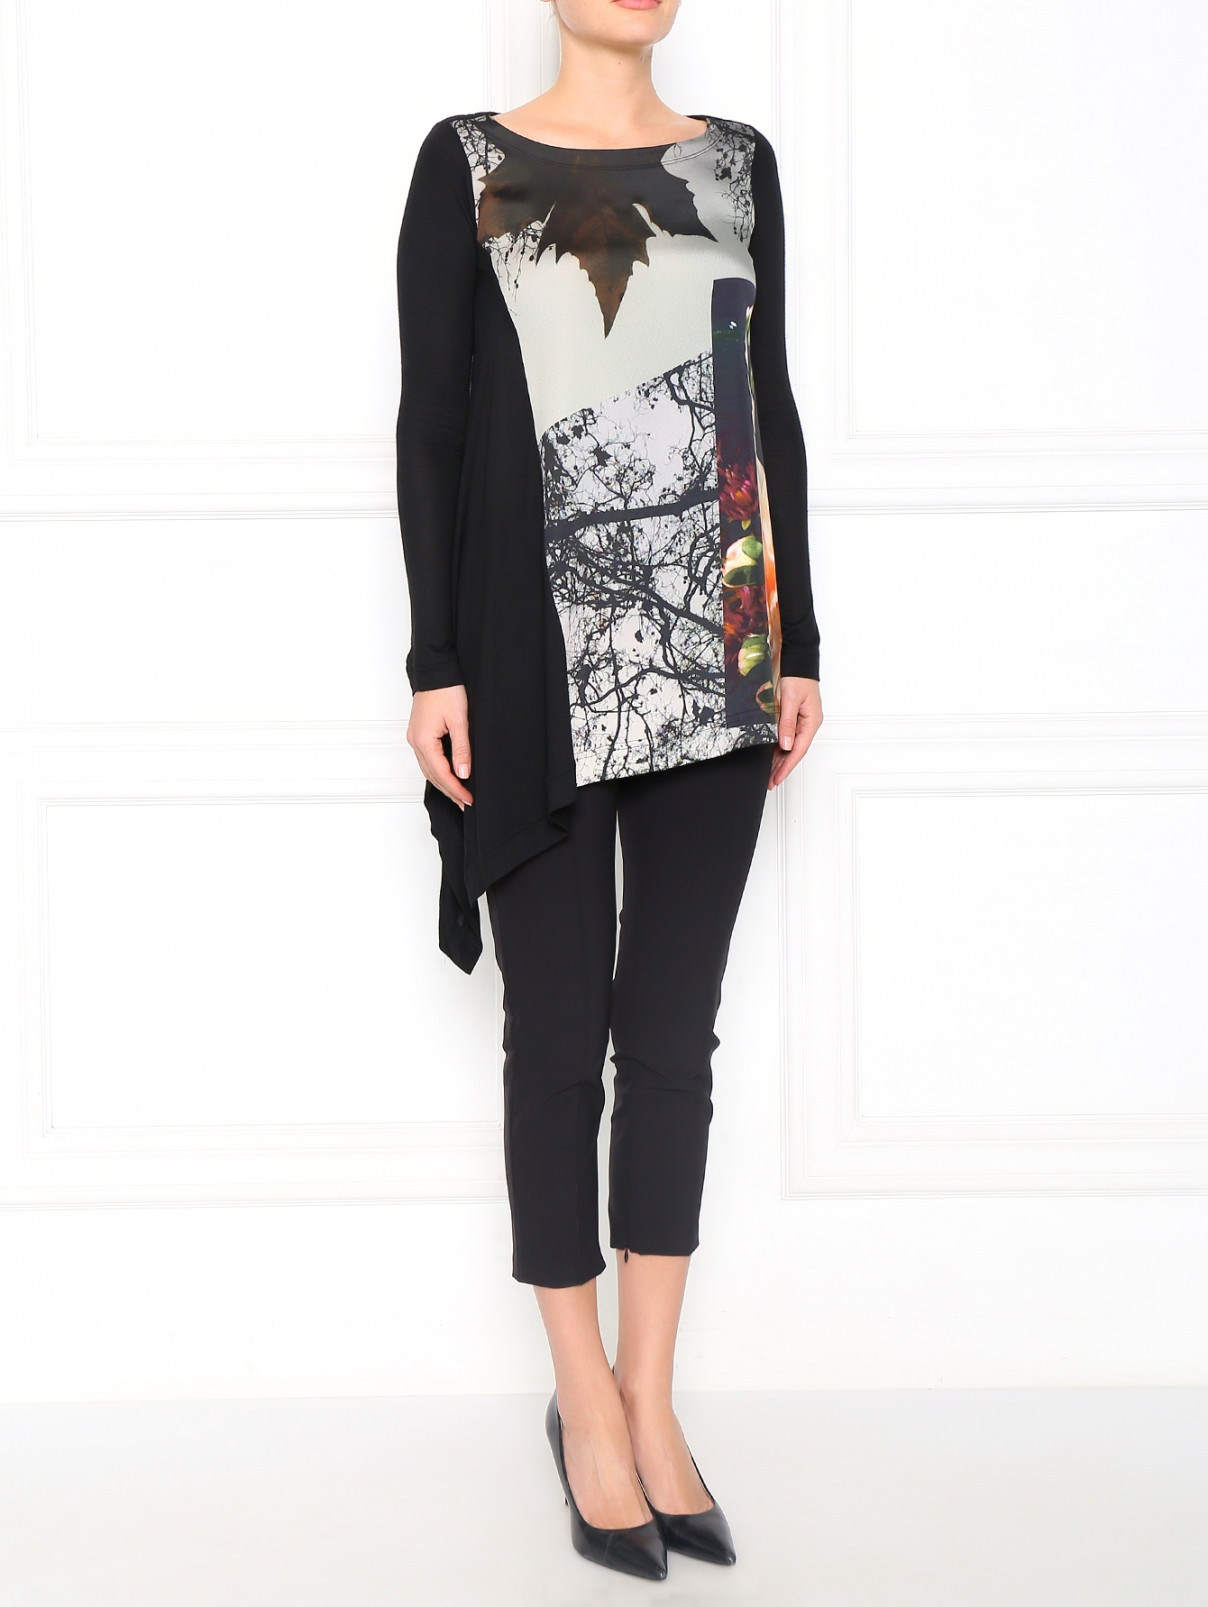 Блуза с длинным рукавом и принтом Isola Marras  –  Модель Общий вид  – Цвет:  Черный